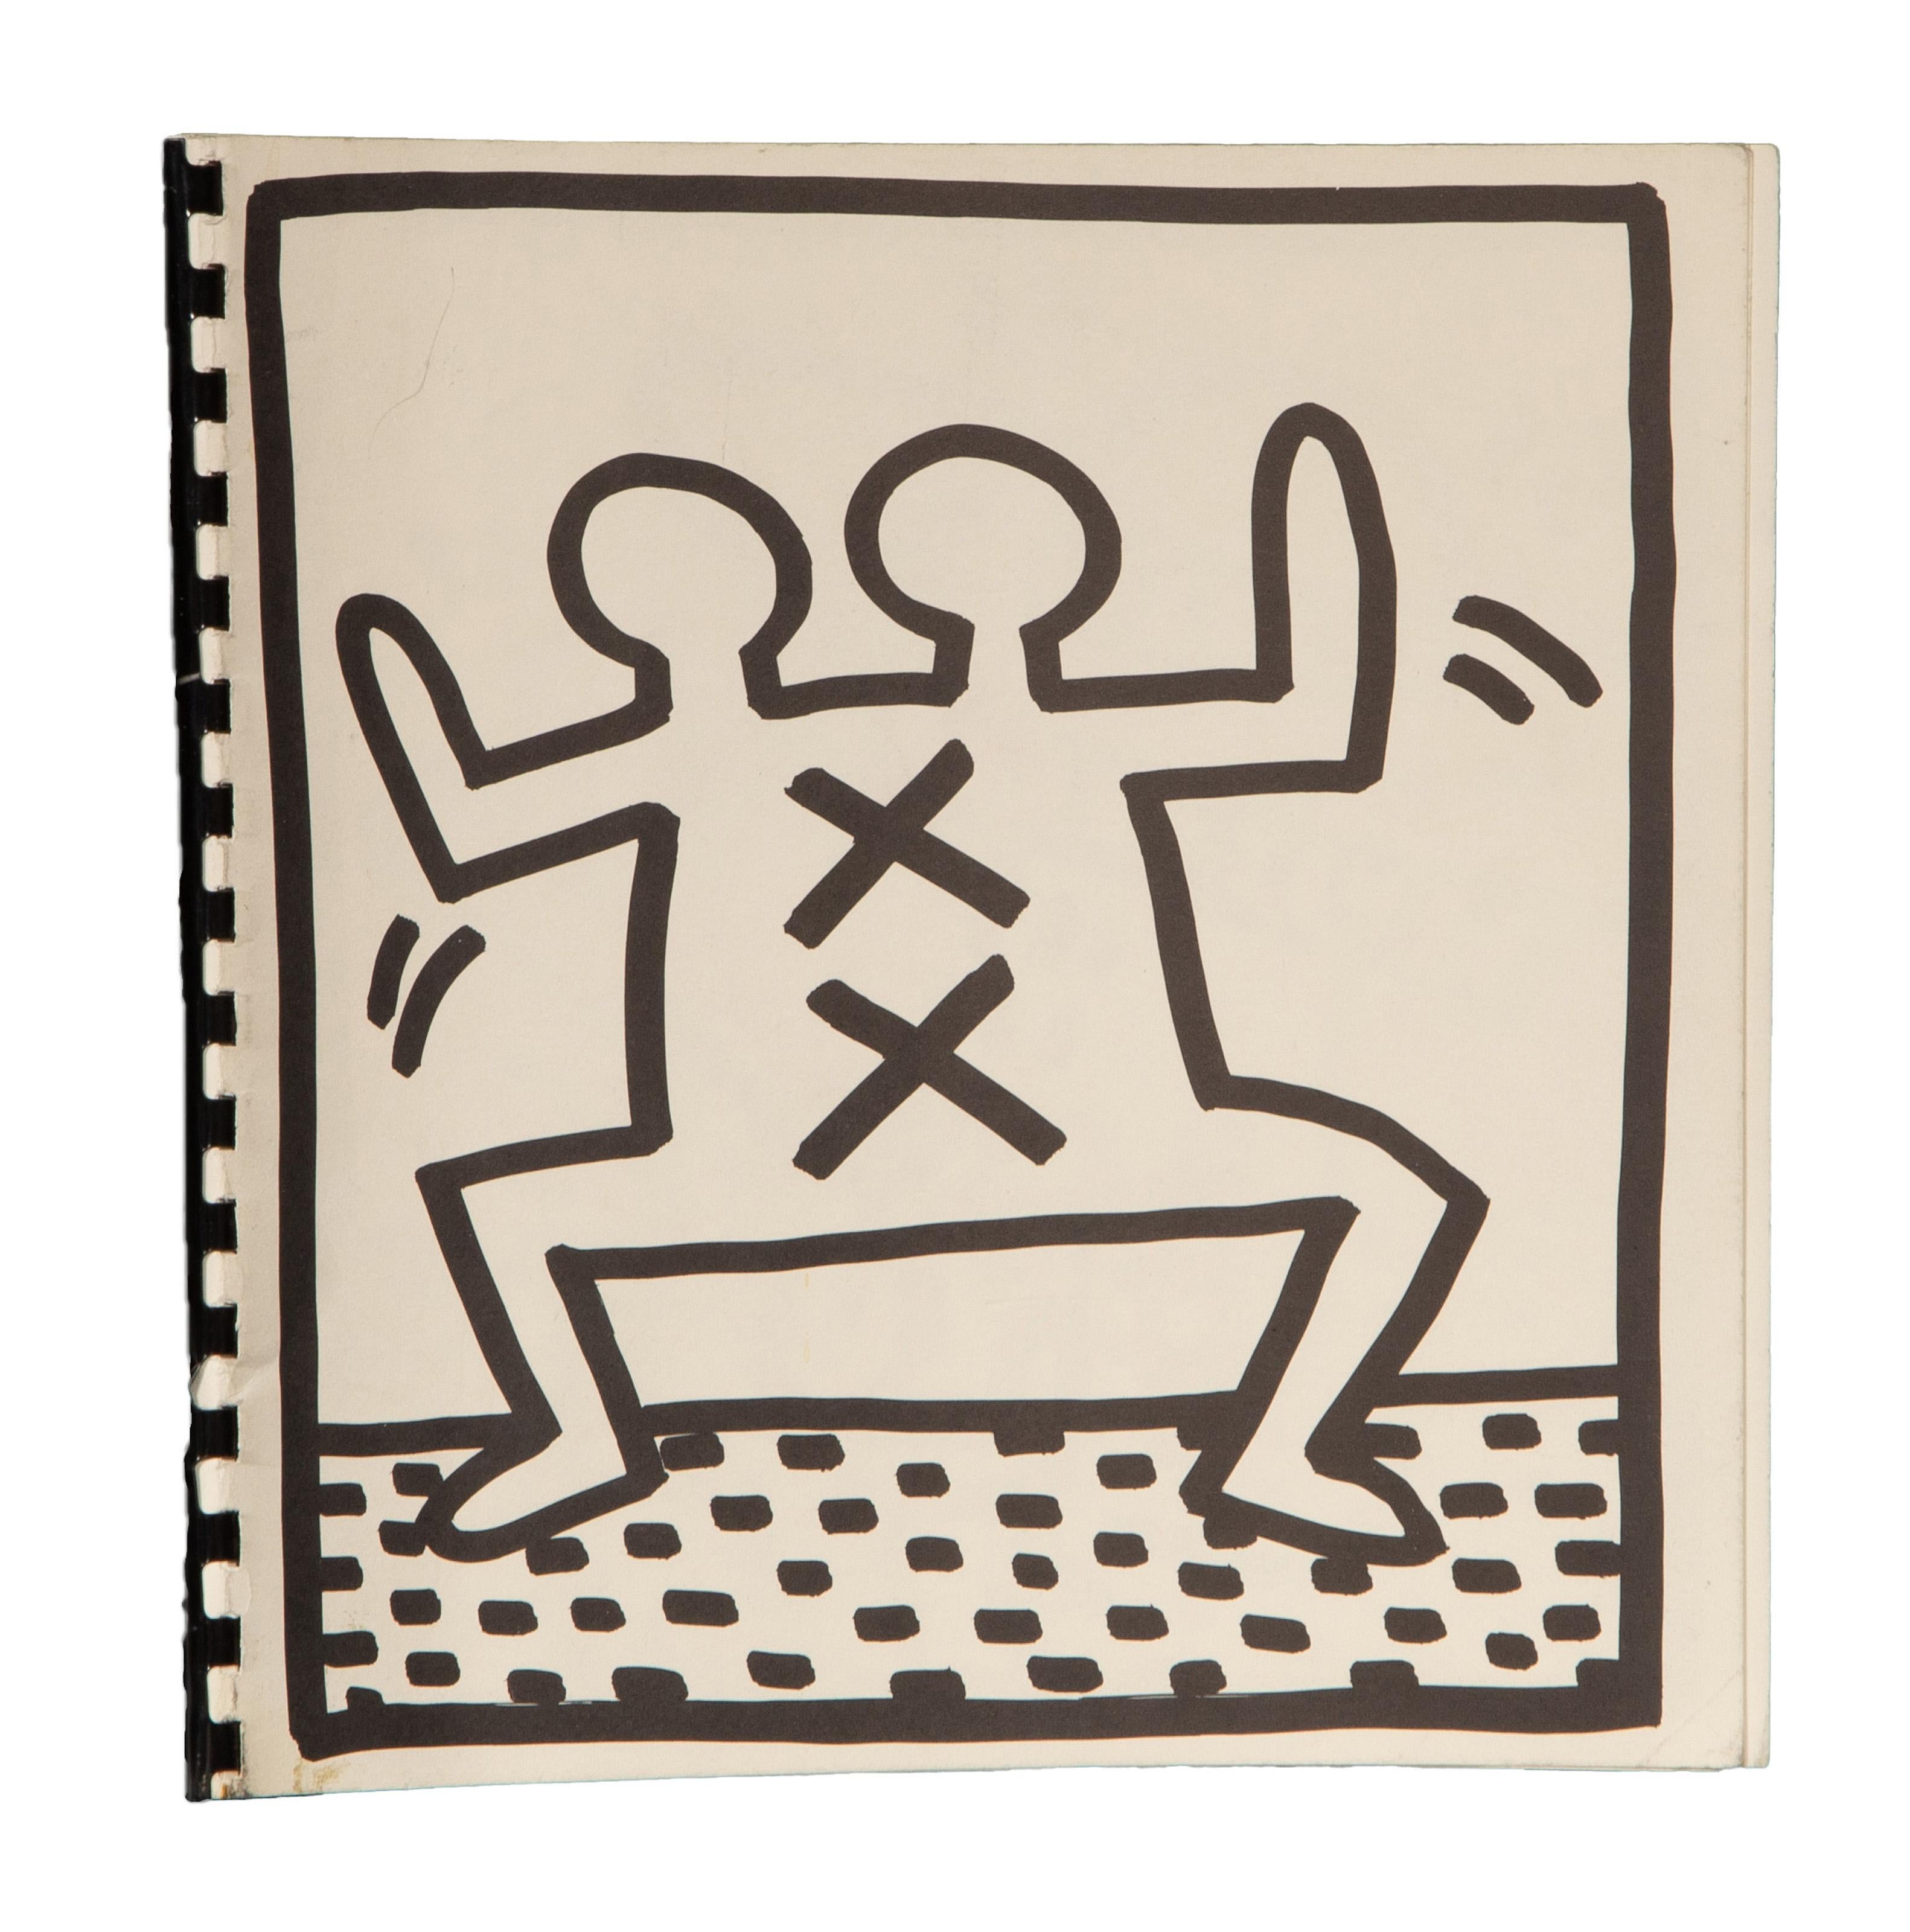 Un livre de coloriage vierge conçu et imprimé par l'artiste pop américain Keith Haring. Cette collection est reliée par une spirale et présente plusieurs illustrations dans le style classique de l'artiste.

Livre de coloriage
Keith Haring, Américain